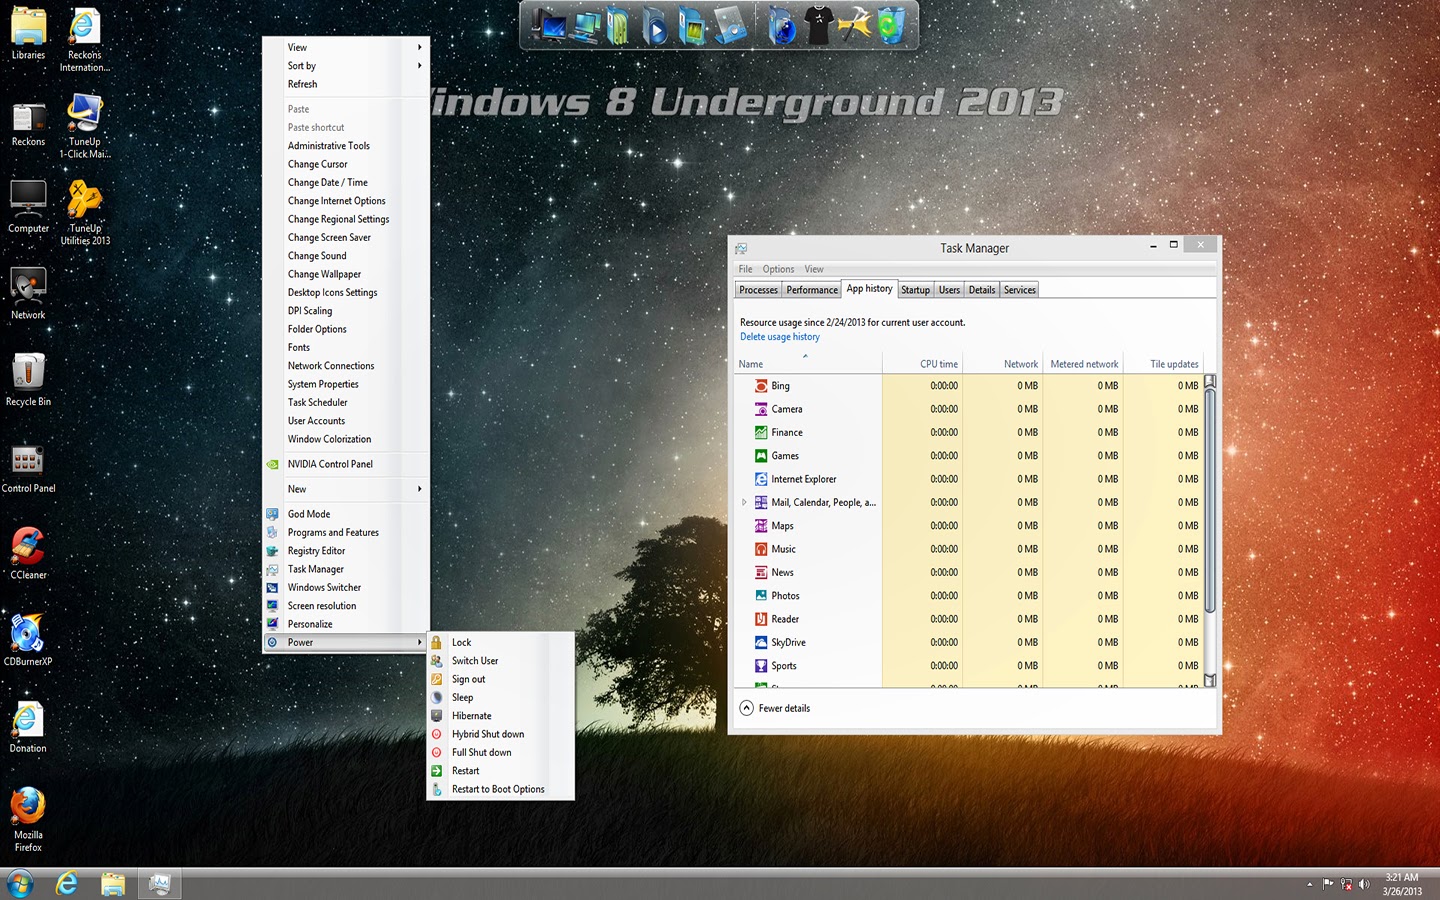 Windows 8 Underground 2013 Product Key Free